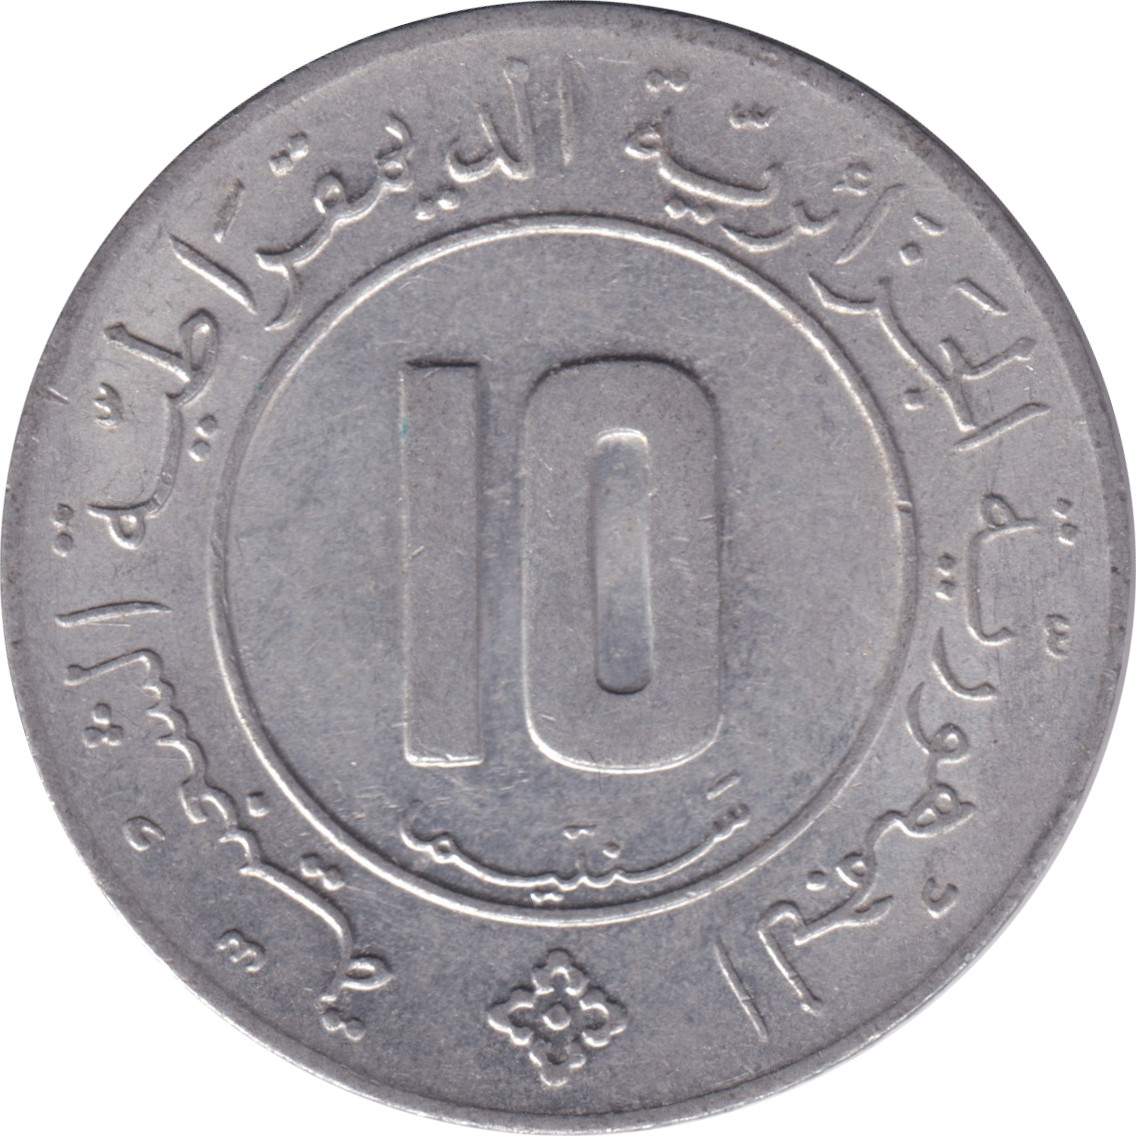 10 centimes - Palmier